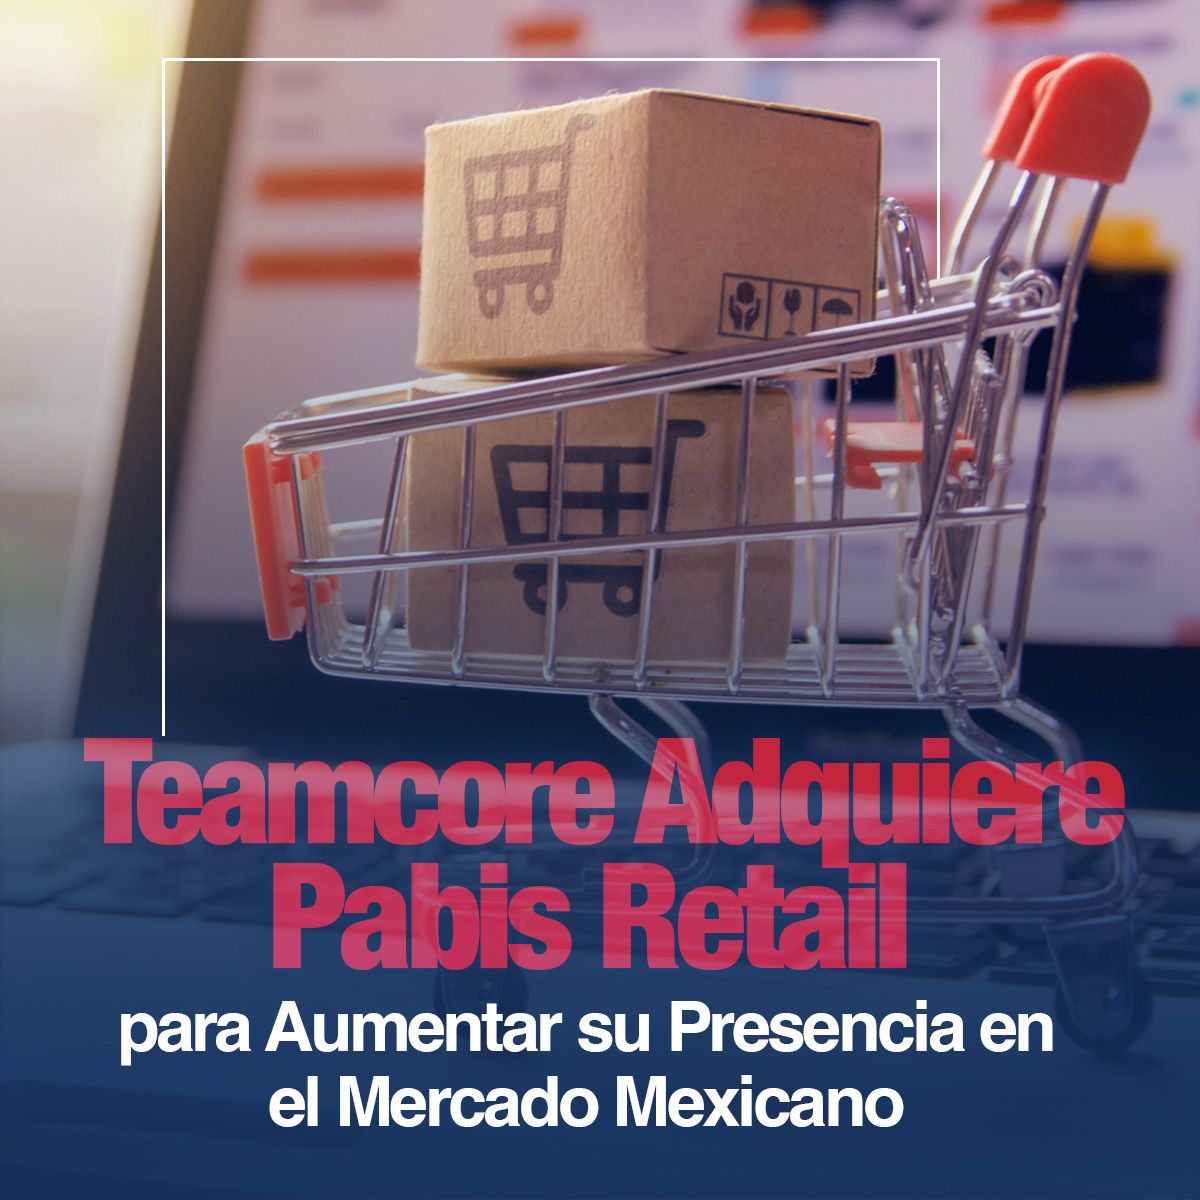 Teamcore Adquiere Pabis Retail para Aumentar su Presencia en el Mercado Mexicano